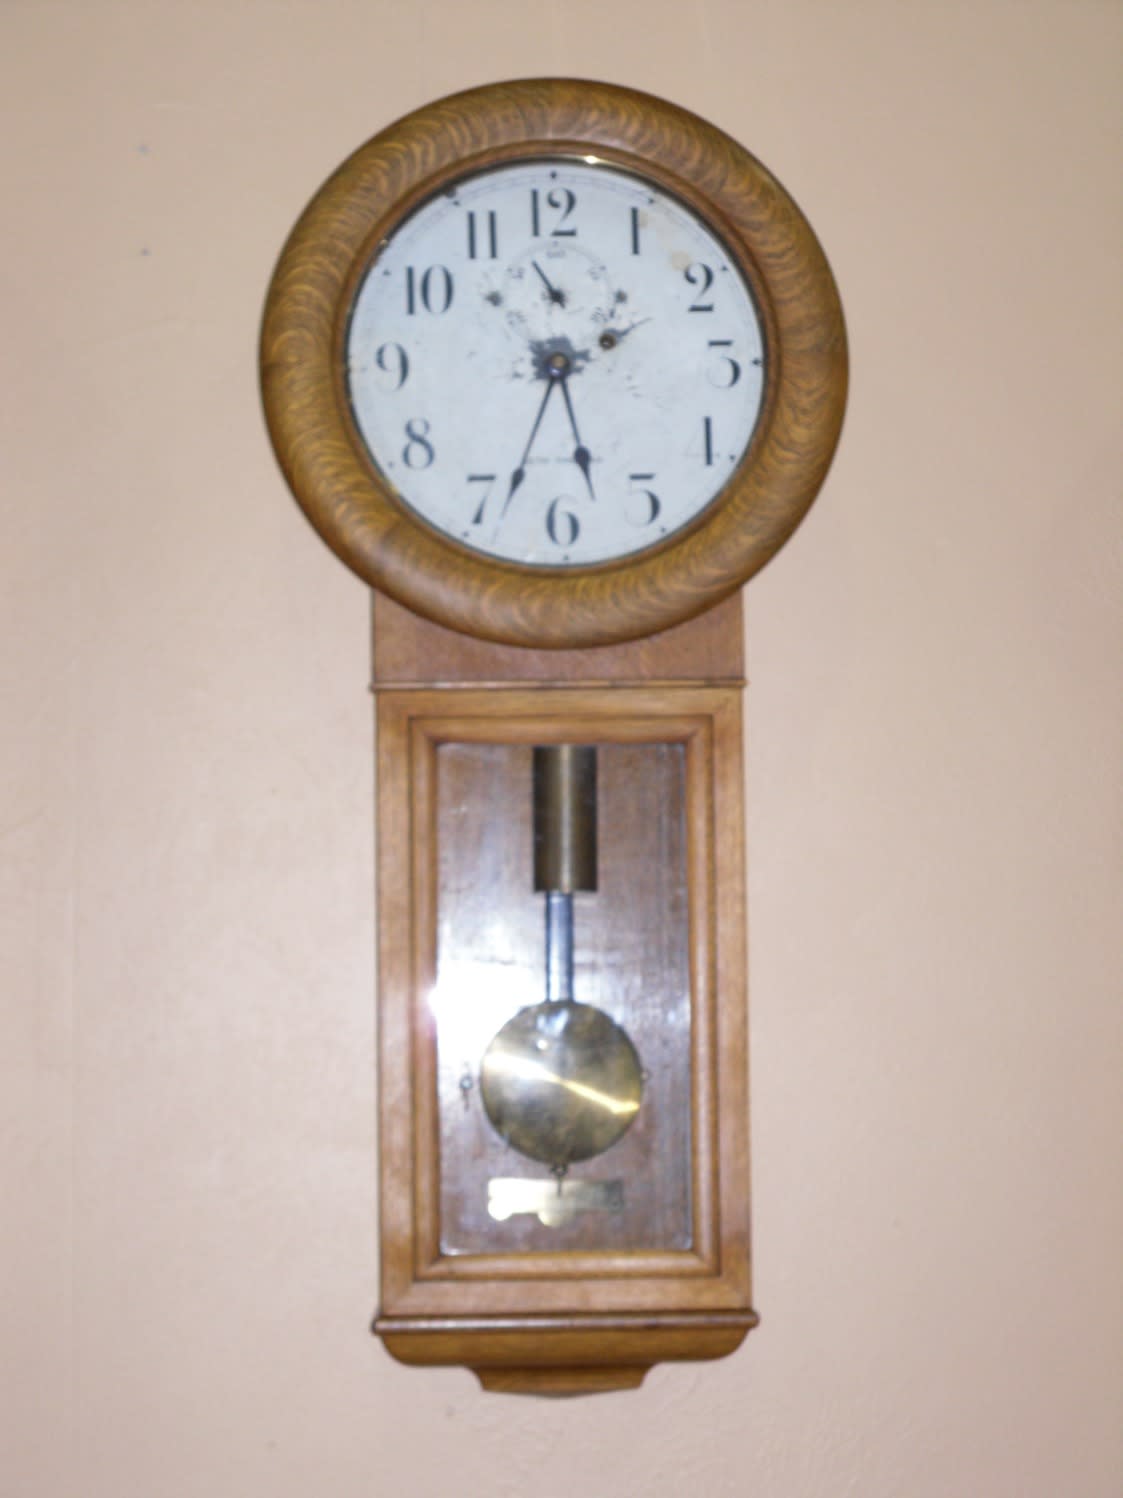 Tic Toc Clock Shop - Mesquite, TX 75149 - (214)321-9331 | ShowMeLocal.com